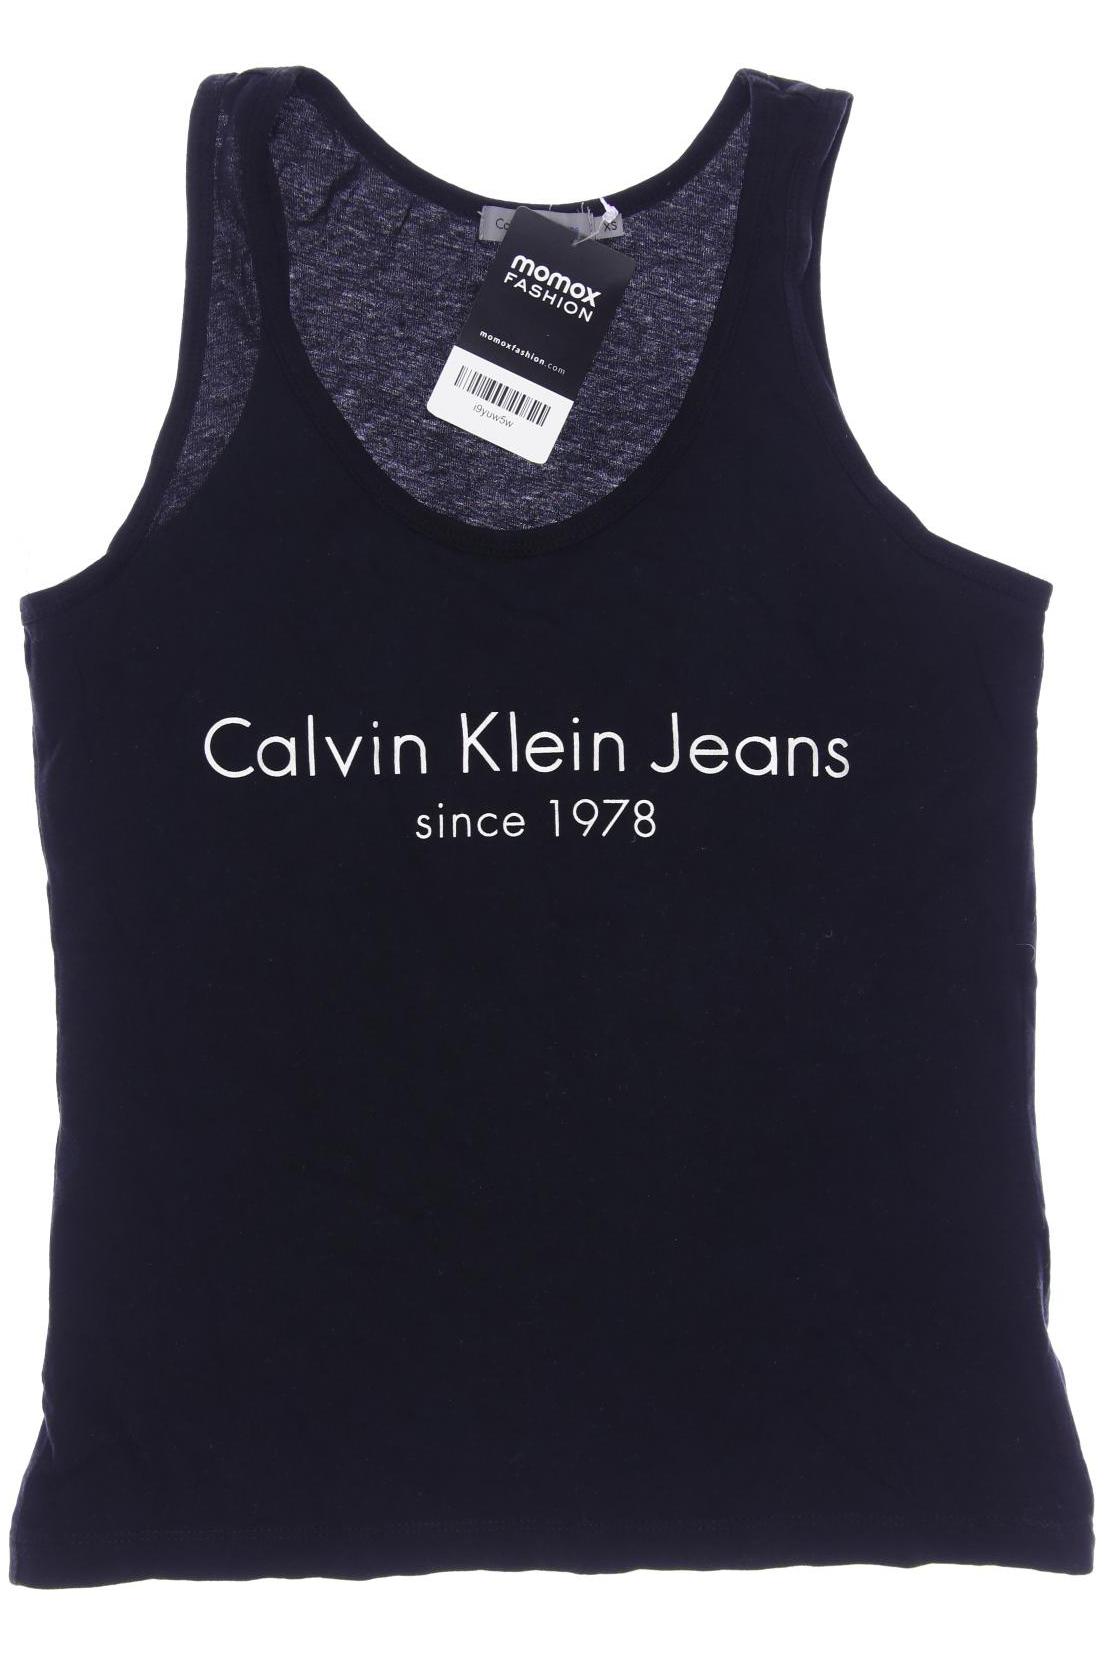 Calvin Klein Jeans Damen Top, schwarz von Calvin Klein Jeans